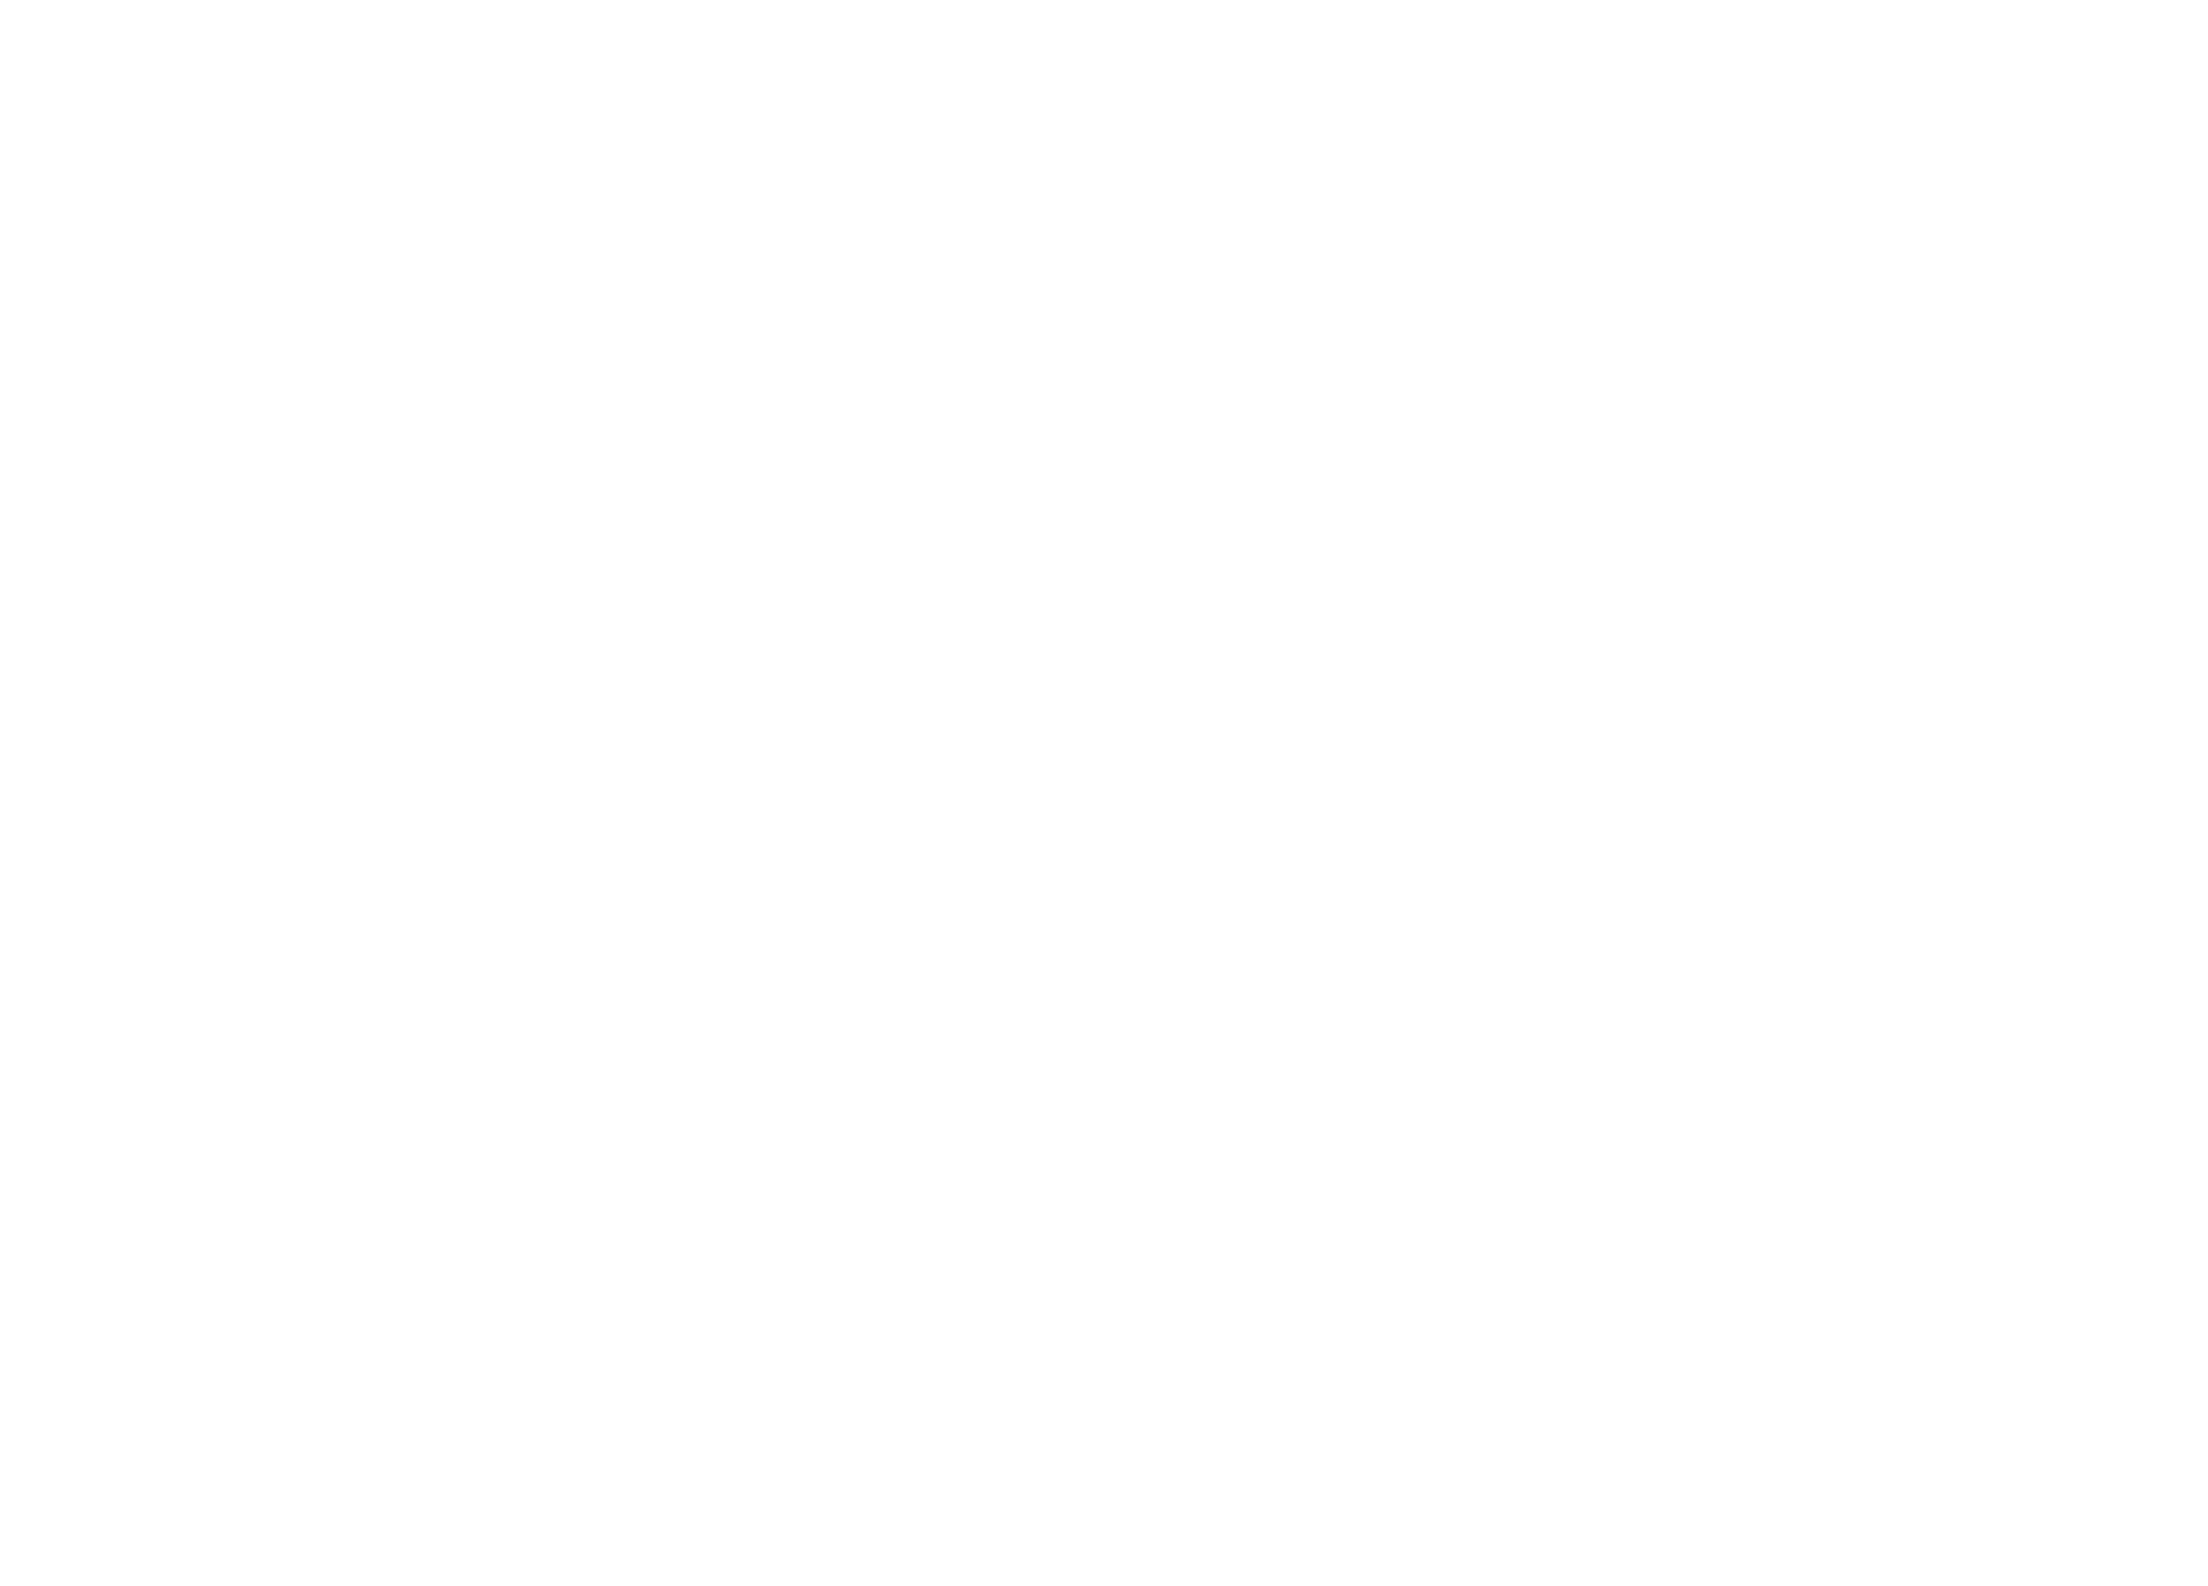 Music maker